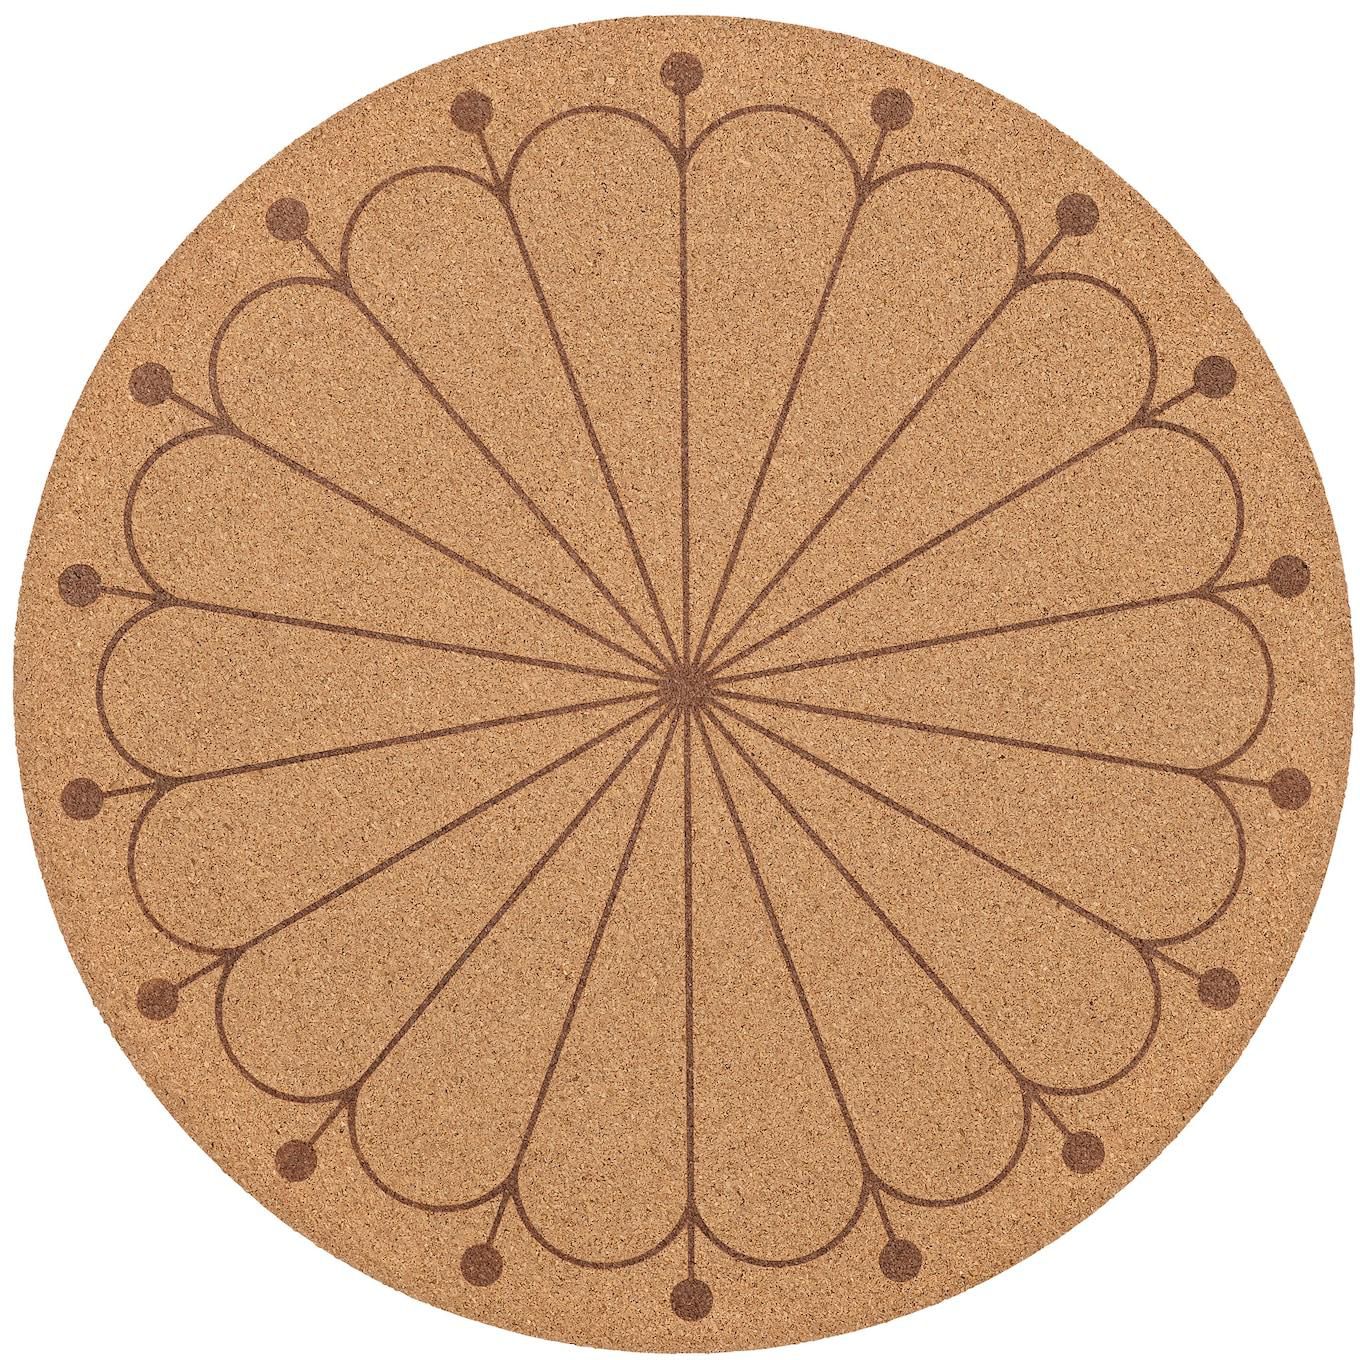 SVARTVIDE Place mat - cork/patterned 35 cm